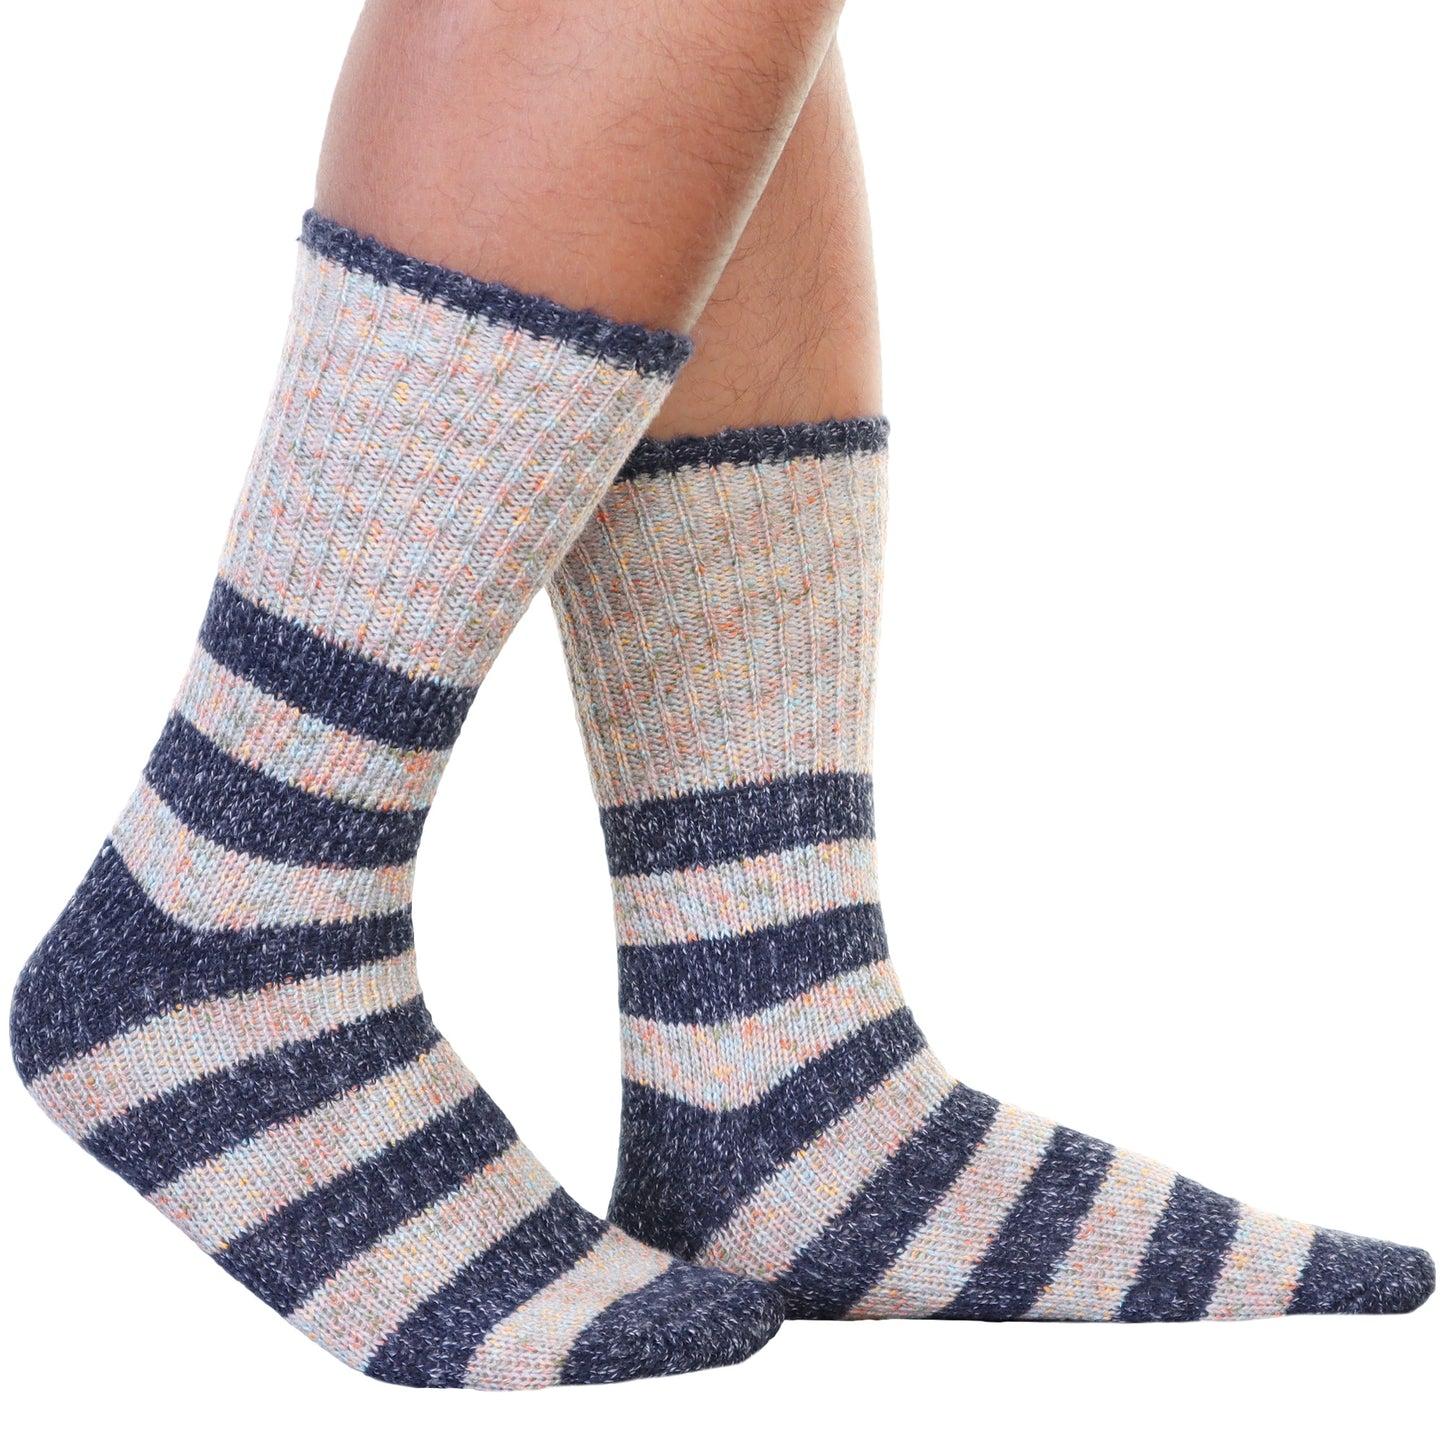 Unisex Cozy Fuzzy Crew Socks with Stripes Pattern (6-Pairs)